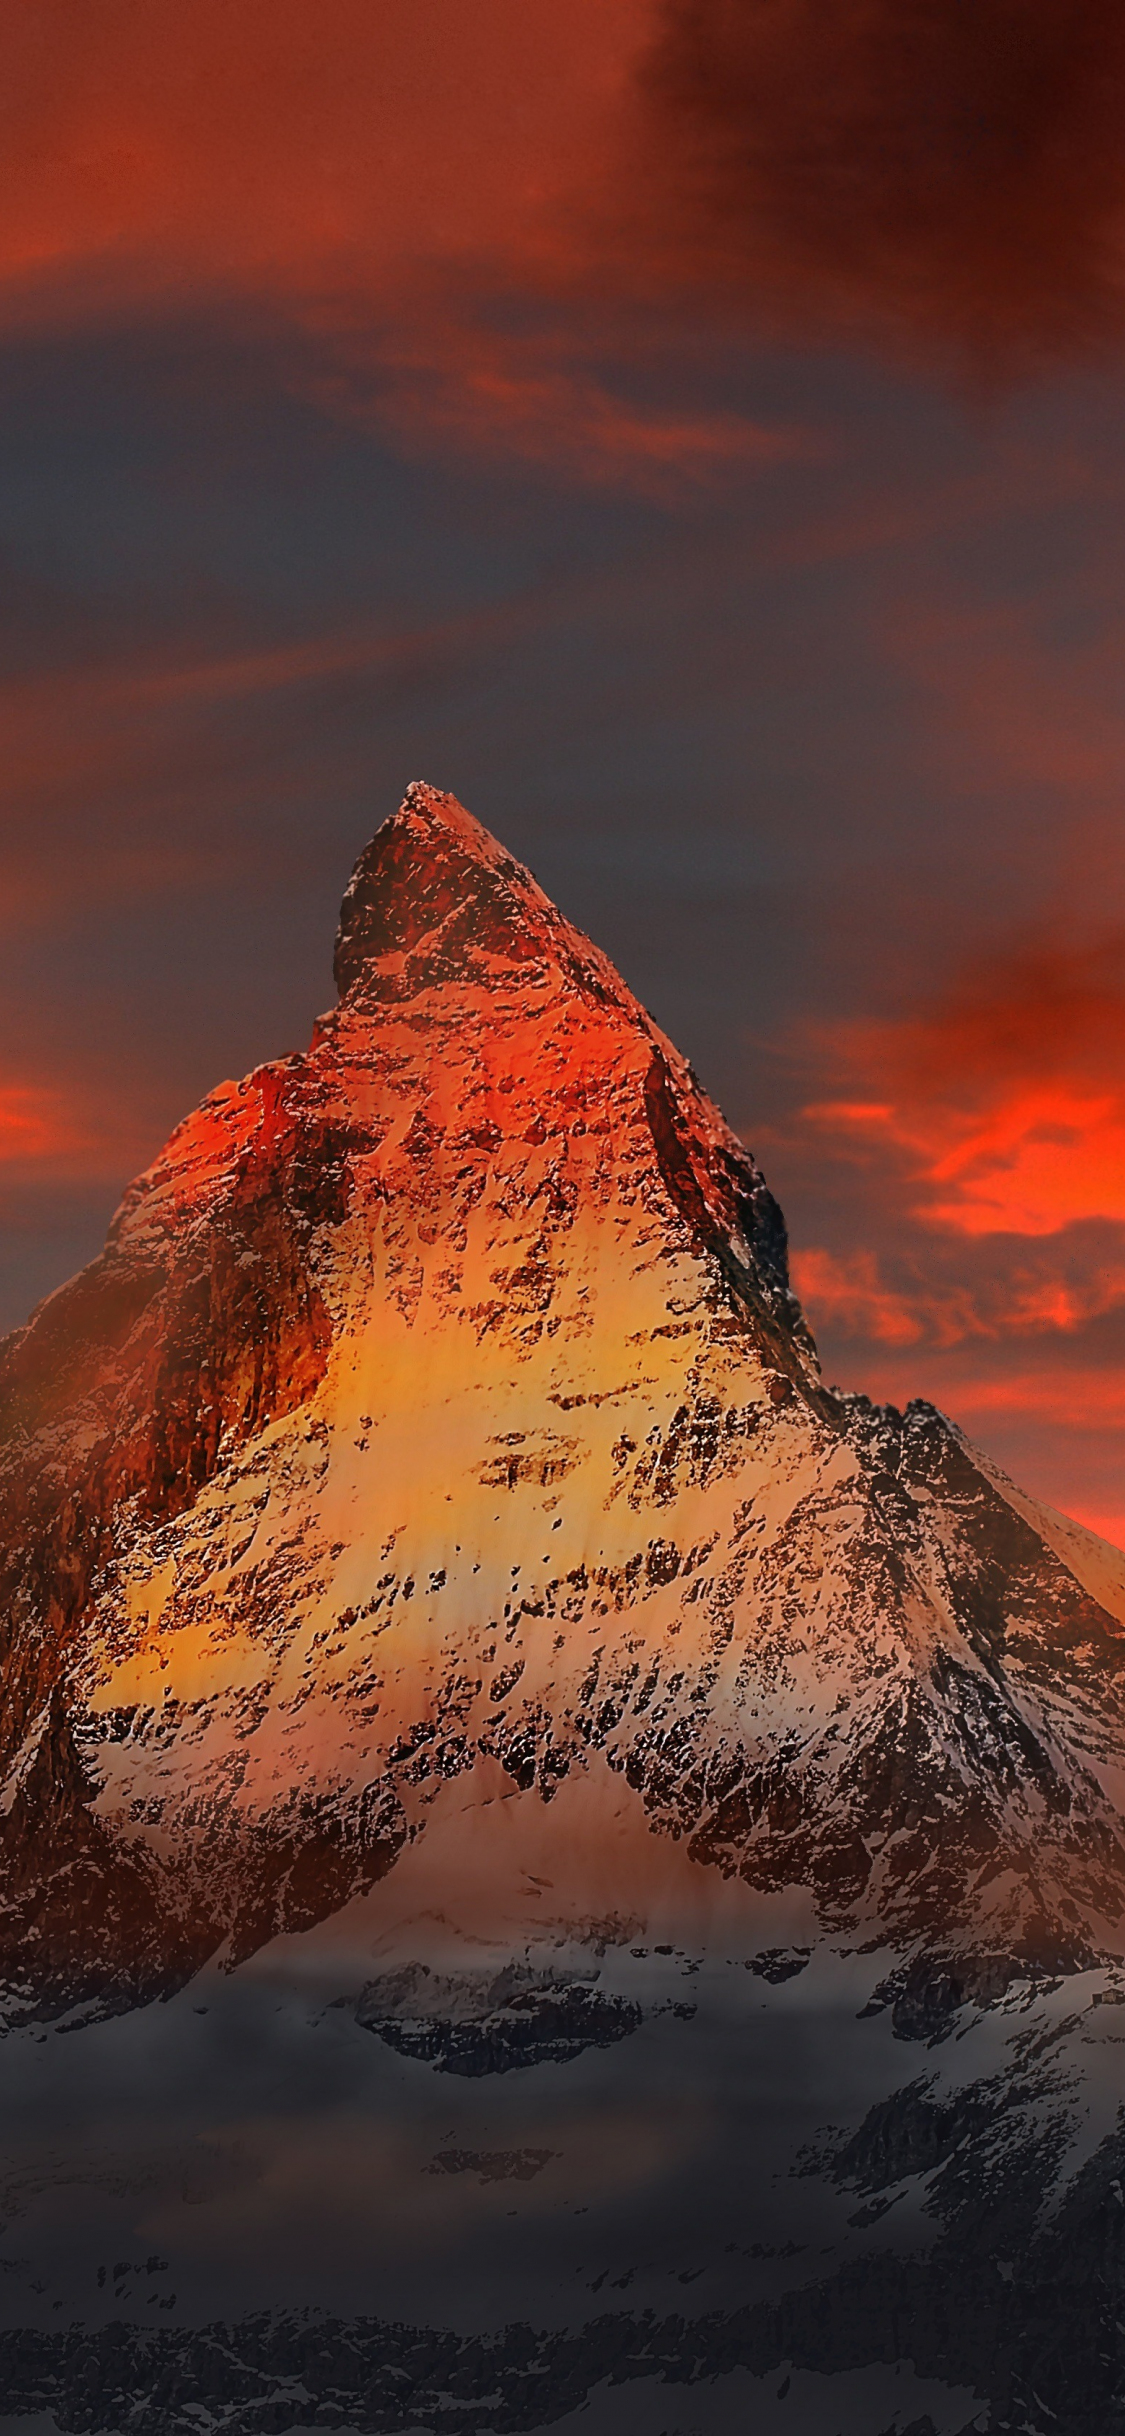 Download Matterhorn Sunset Clouds Mountains 1125x2436 Wallpaper Iphone X 1125x2436 Hd Image Background 15